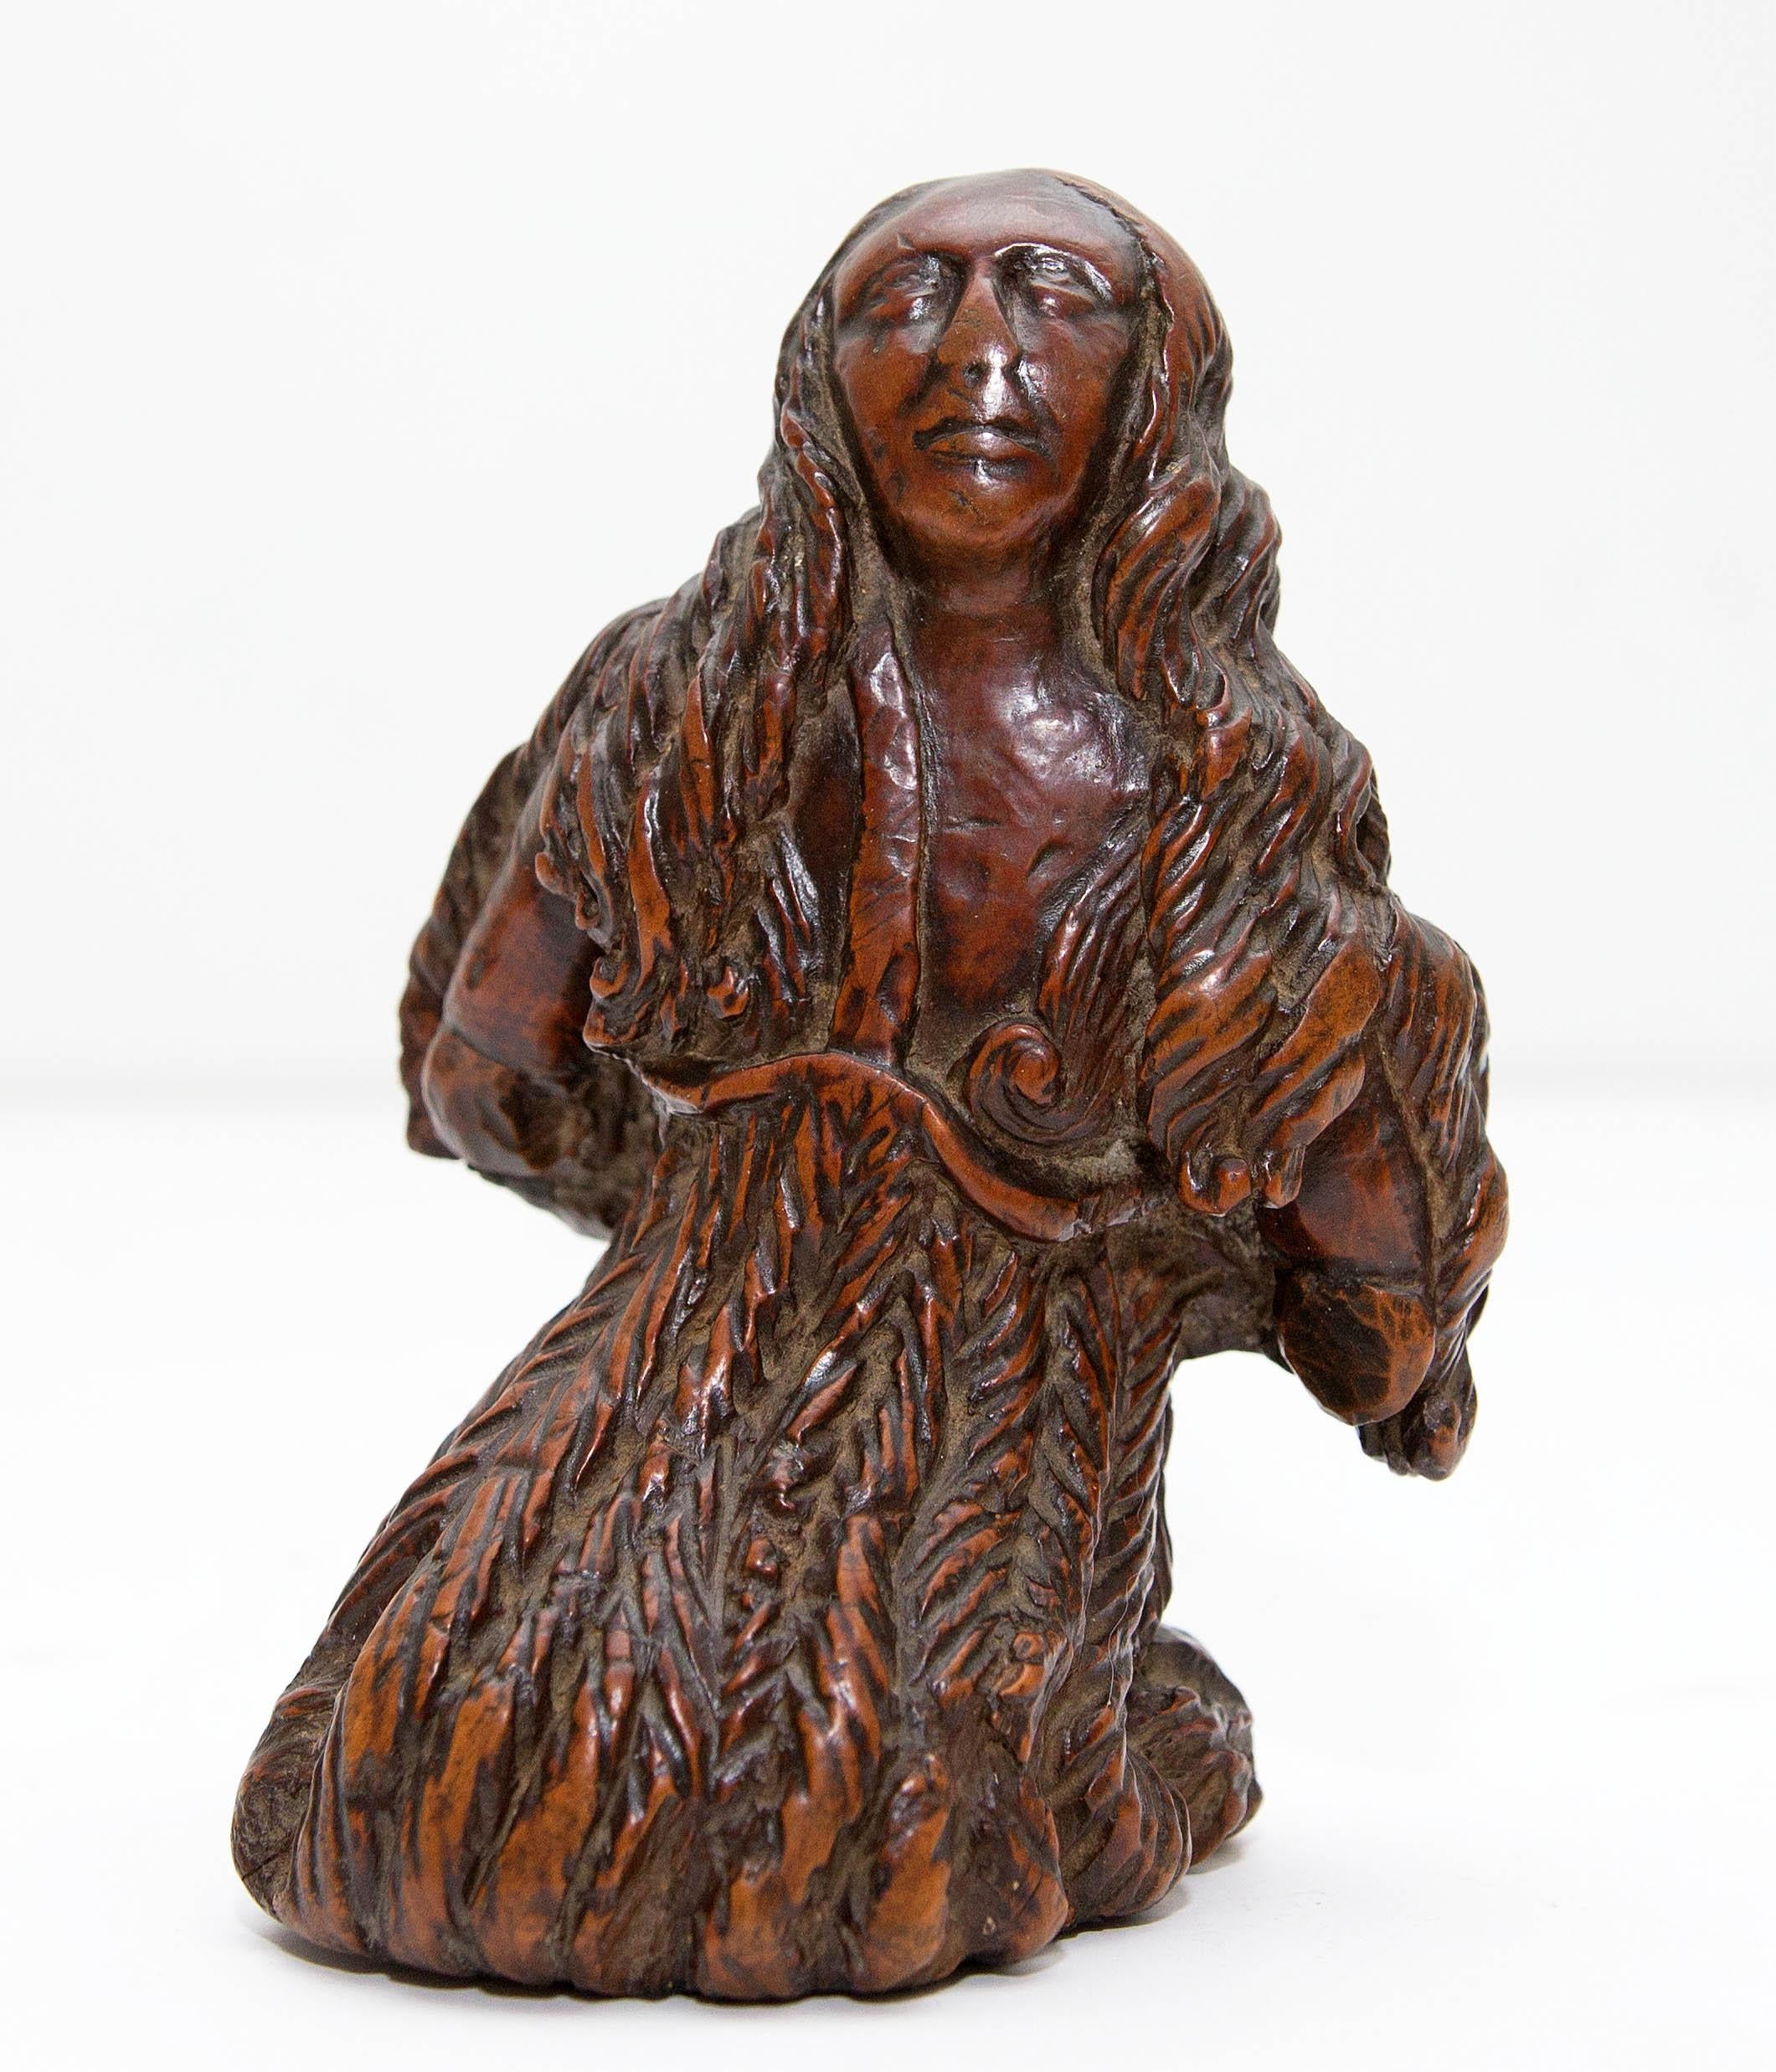 Flämische Skulptur einer religiösen Figur aus dem 17. Jahrhundert – Sculpture von Unknown